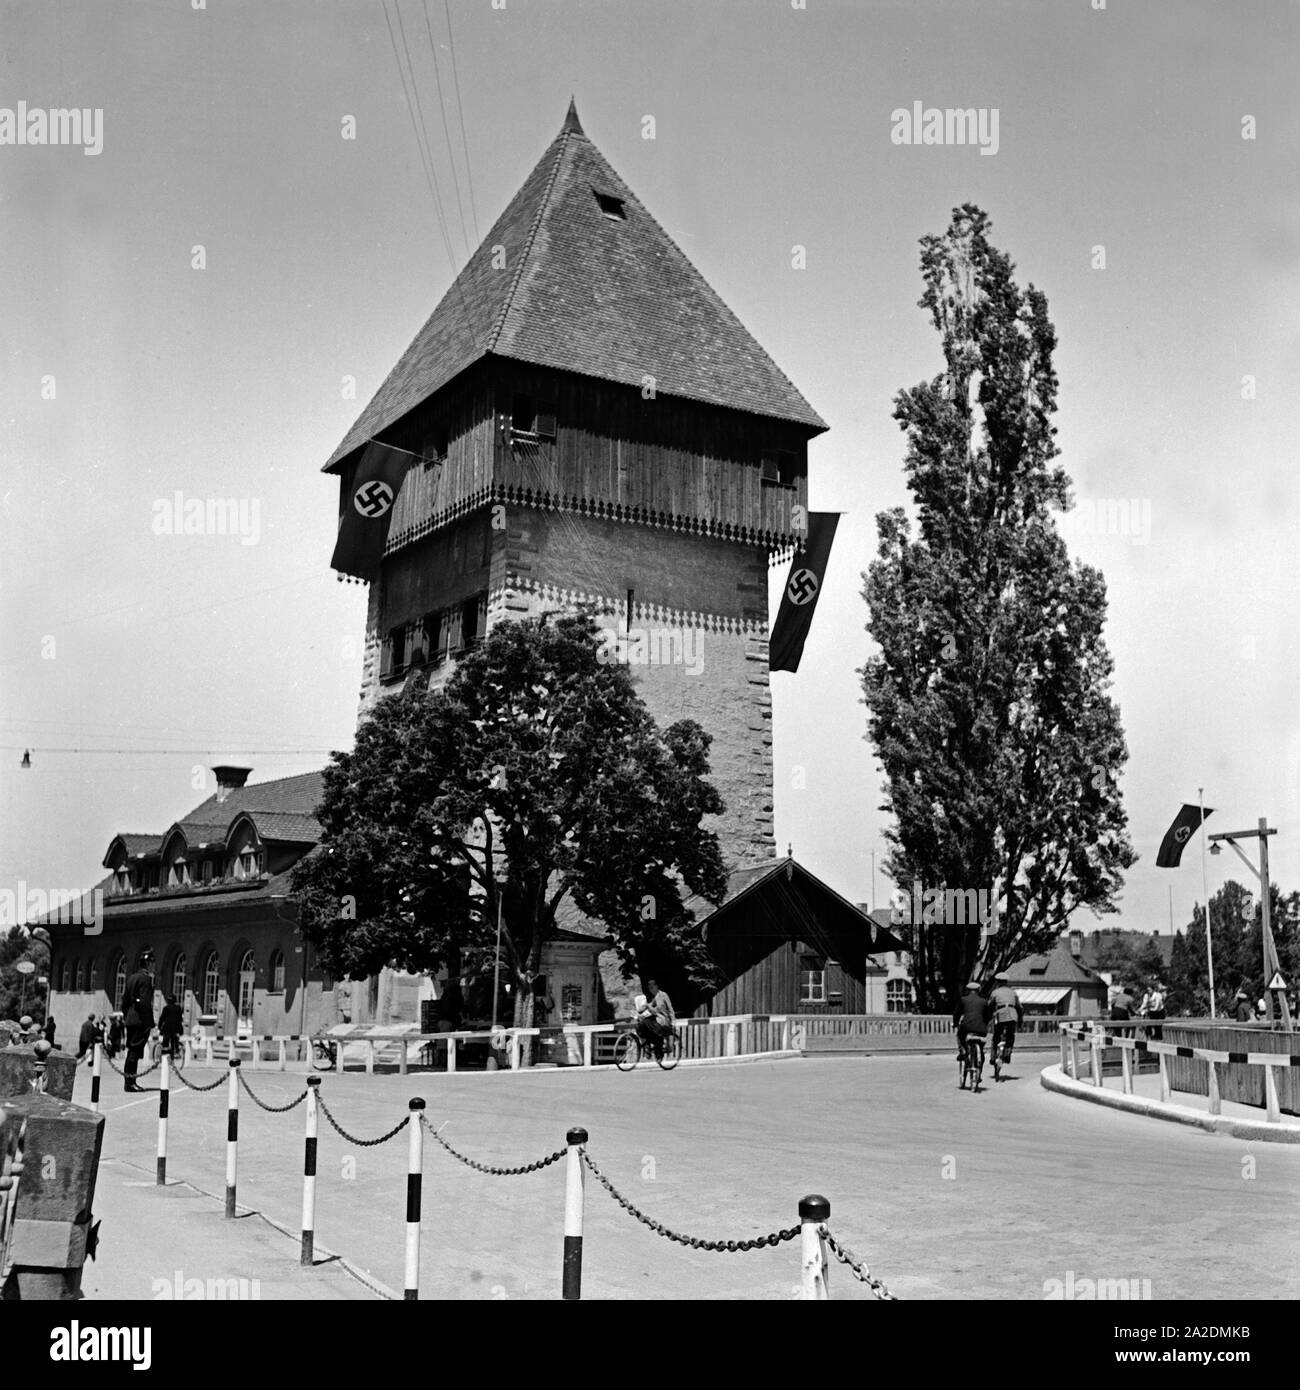 Der Rheintorturm in Konstanz, Deutschland 1930er Jahre. Tower of the Rhine gate at Constance, Germany 1930s. Stock Photo